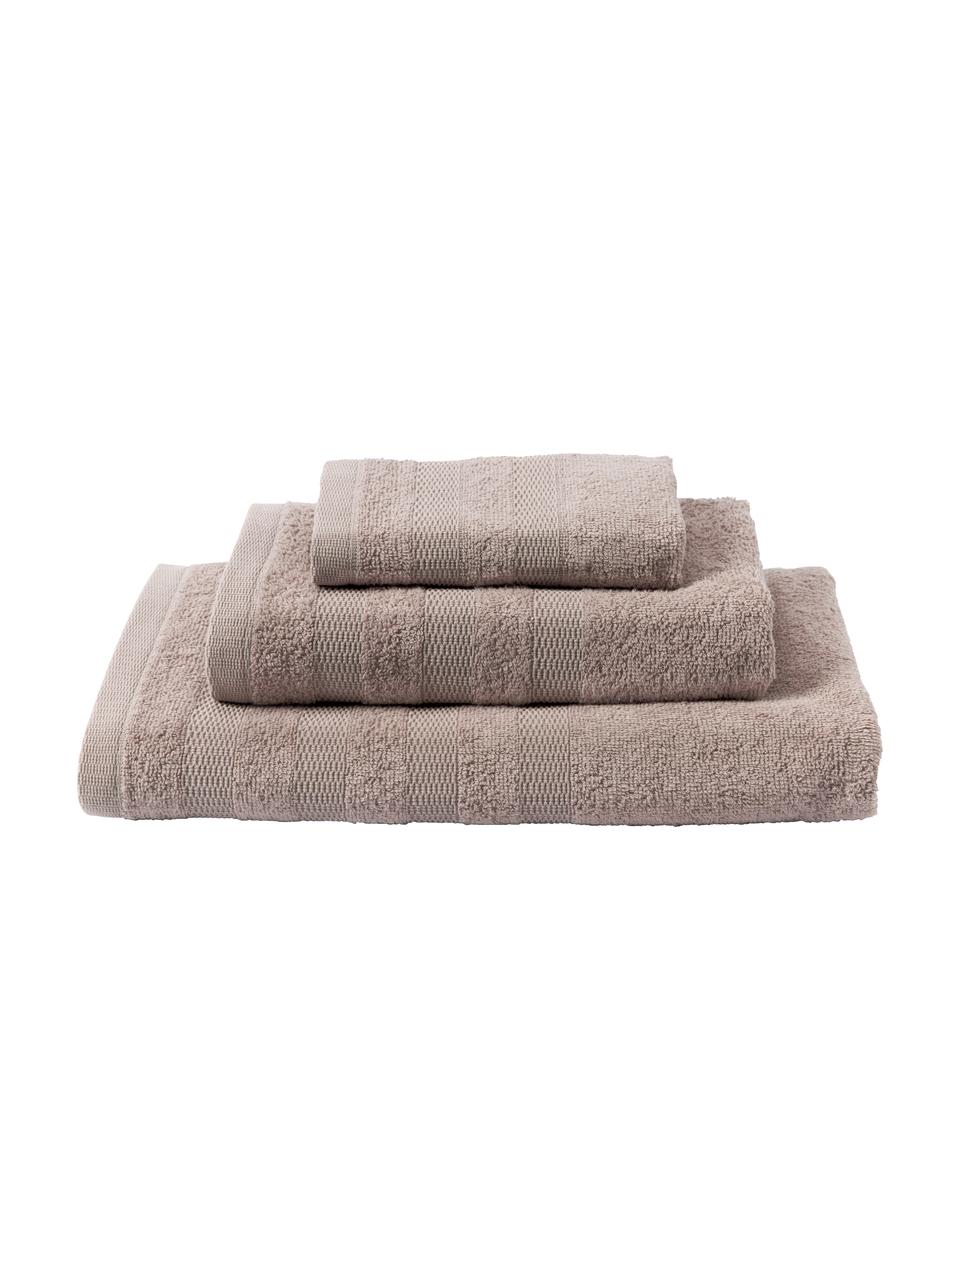 Komplet ręczników z bawełny Camila, 3 elem., Taupe, Komplet z różnymi rozmiarami